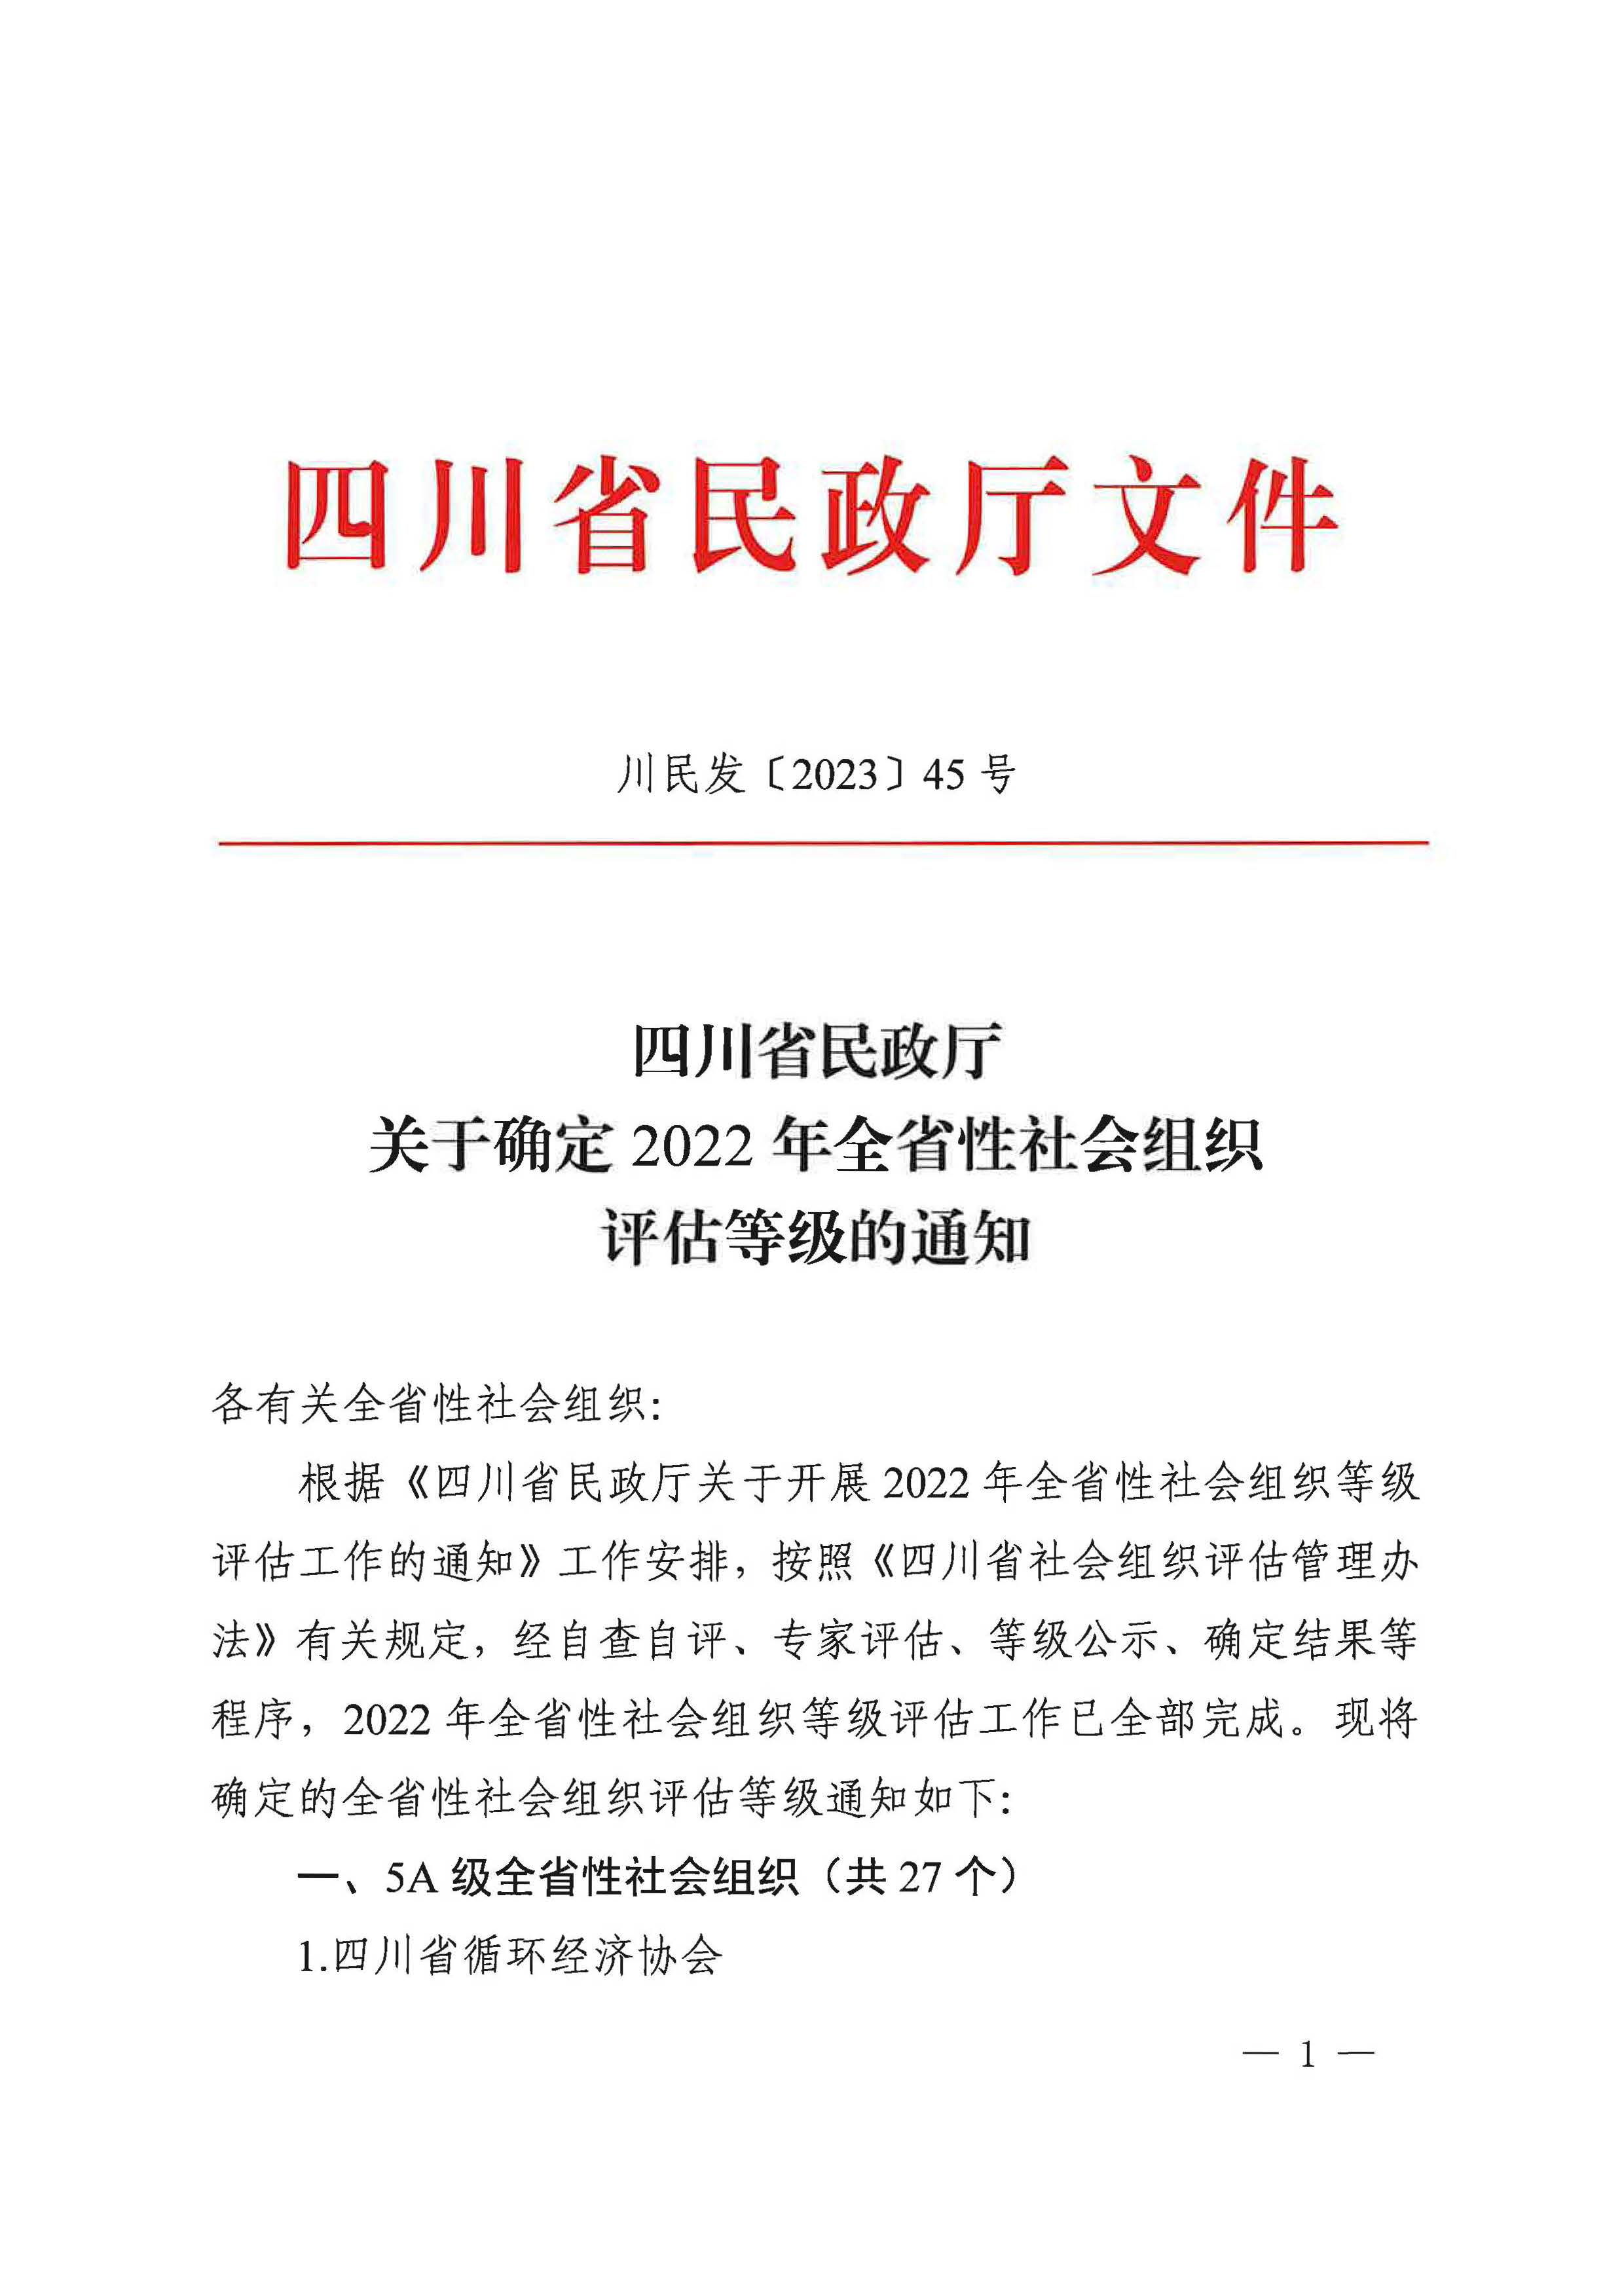 四川省华西天使医学基金会获评“4A级社会组织”